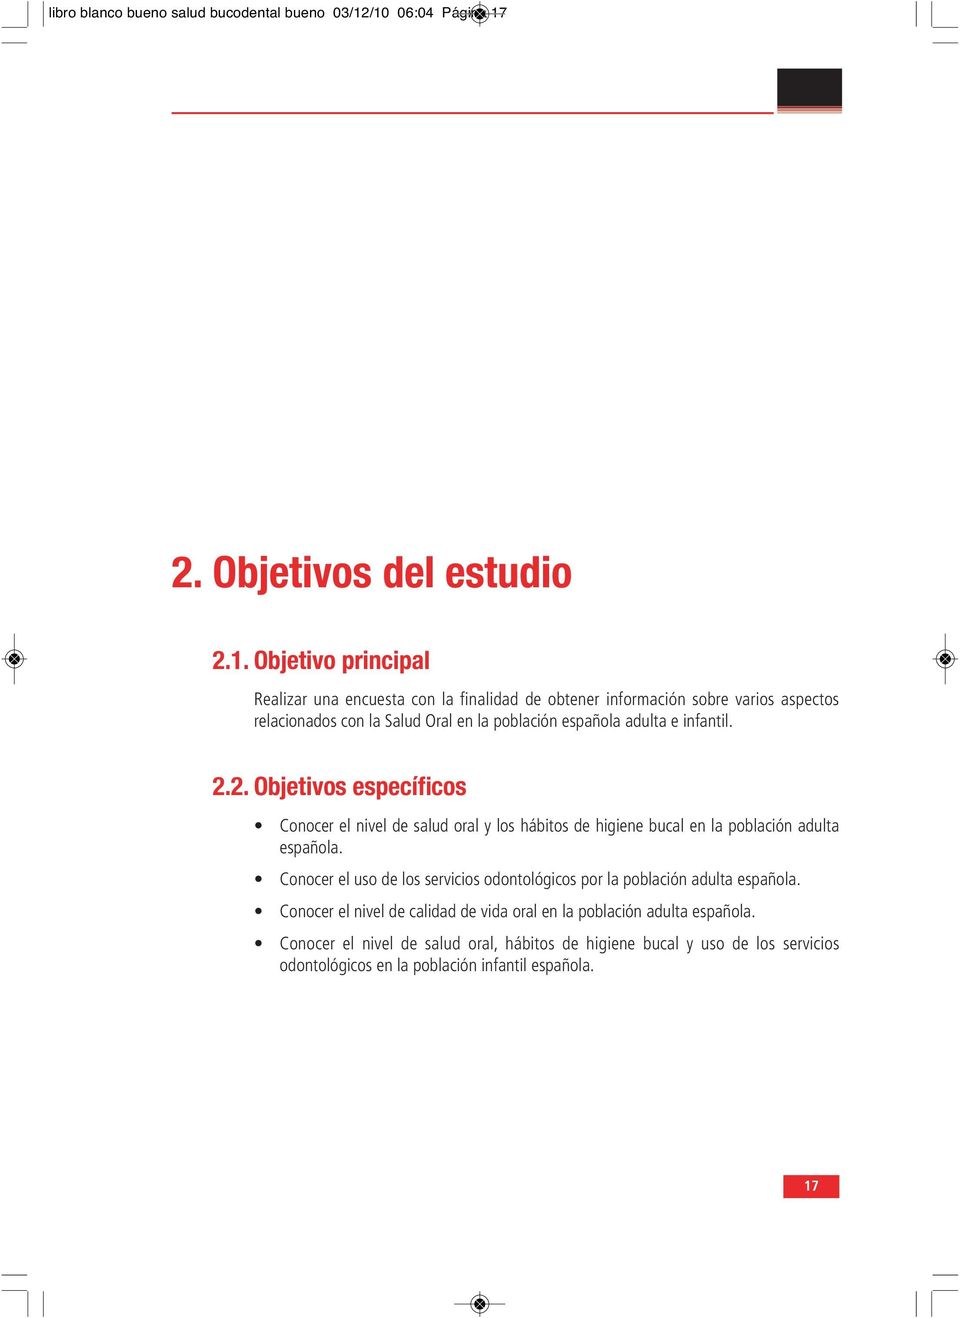 la Salud Oral en la población española adulta e infantil. 2.